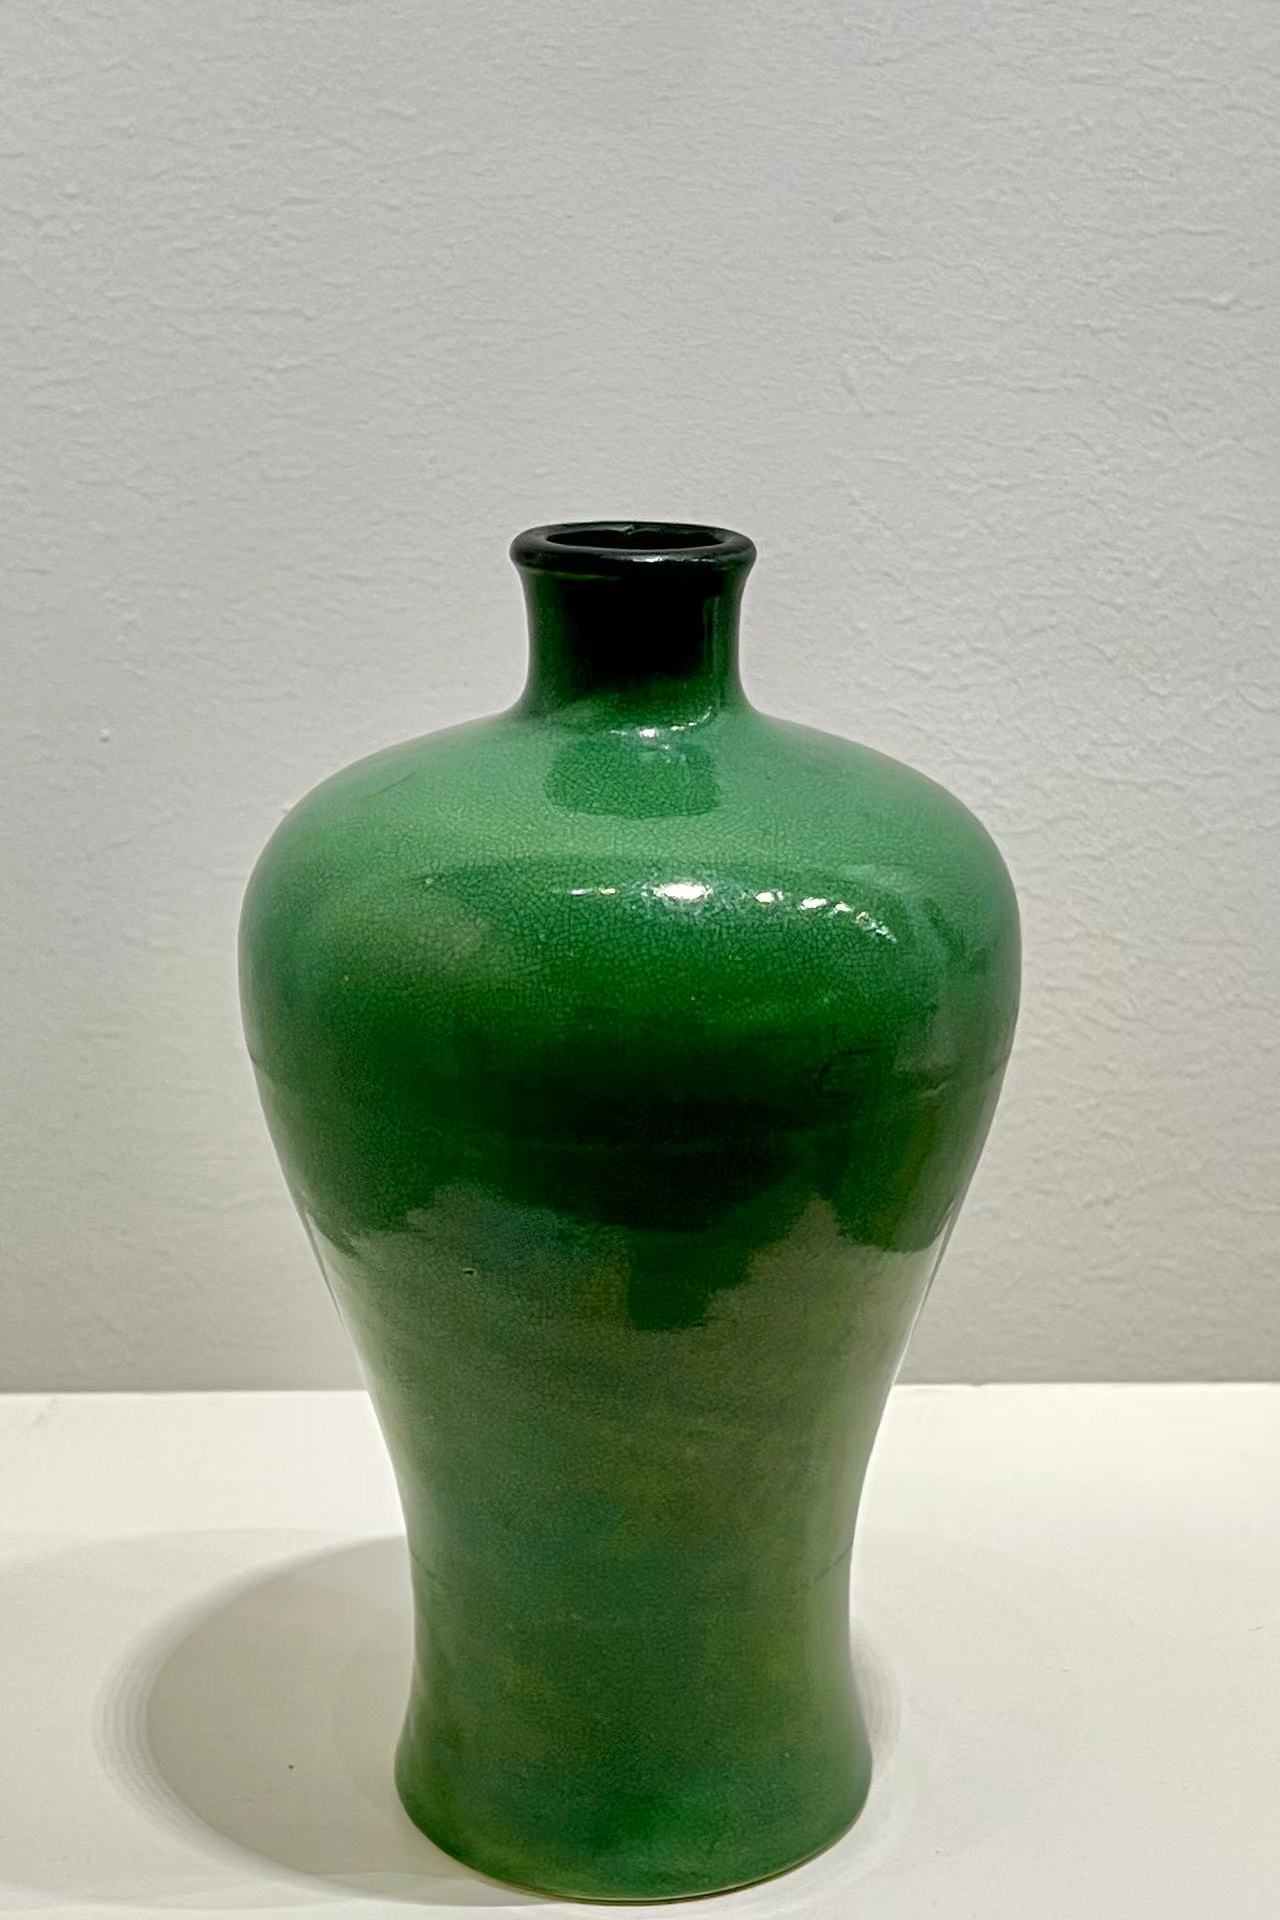 瓷韵武汉博物馆的明清单色釉瓷器收藏展2